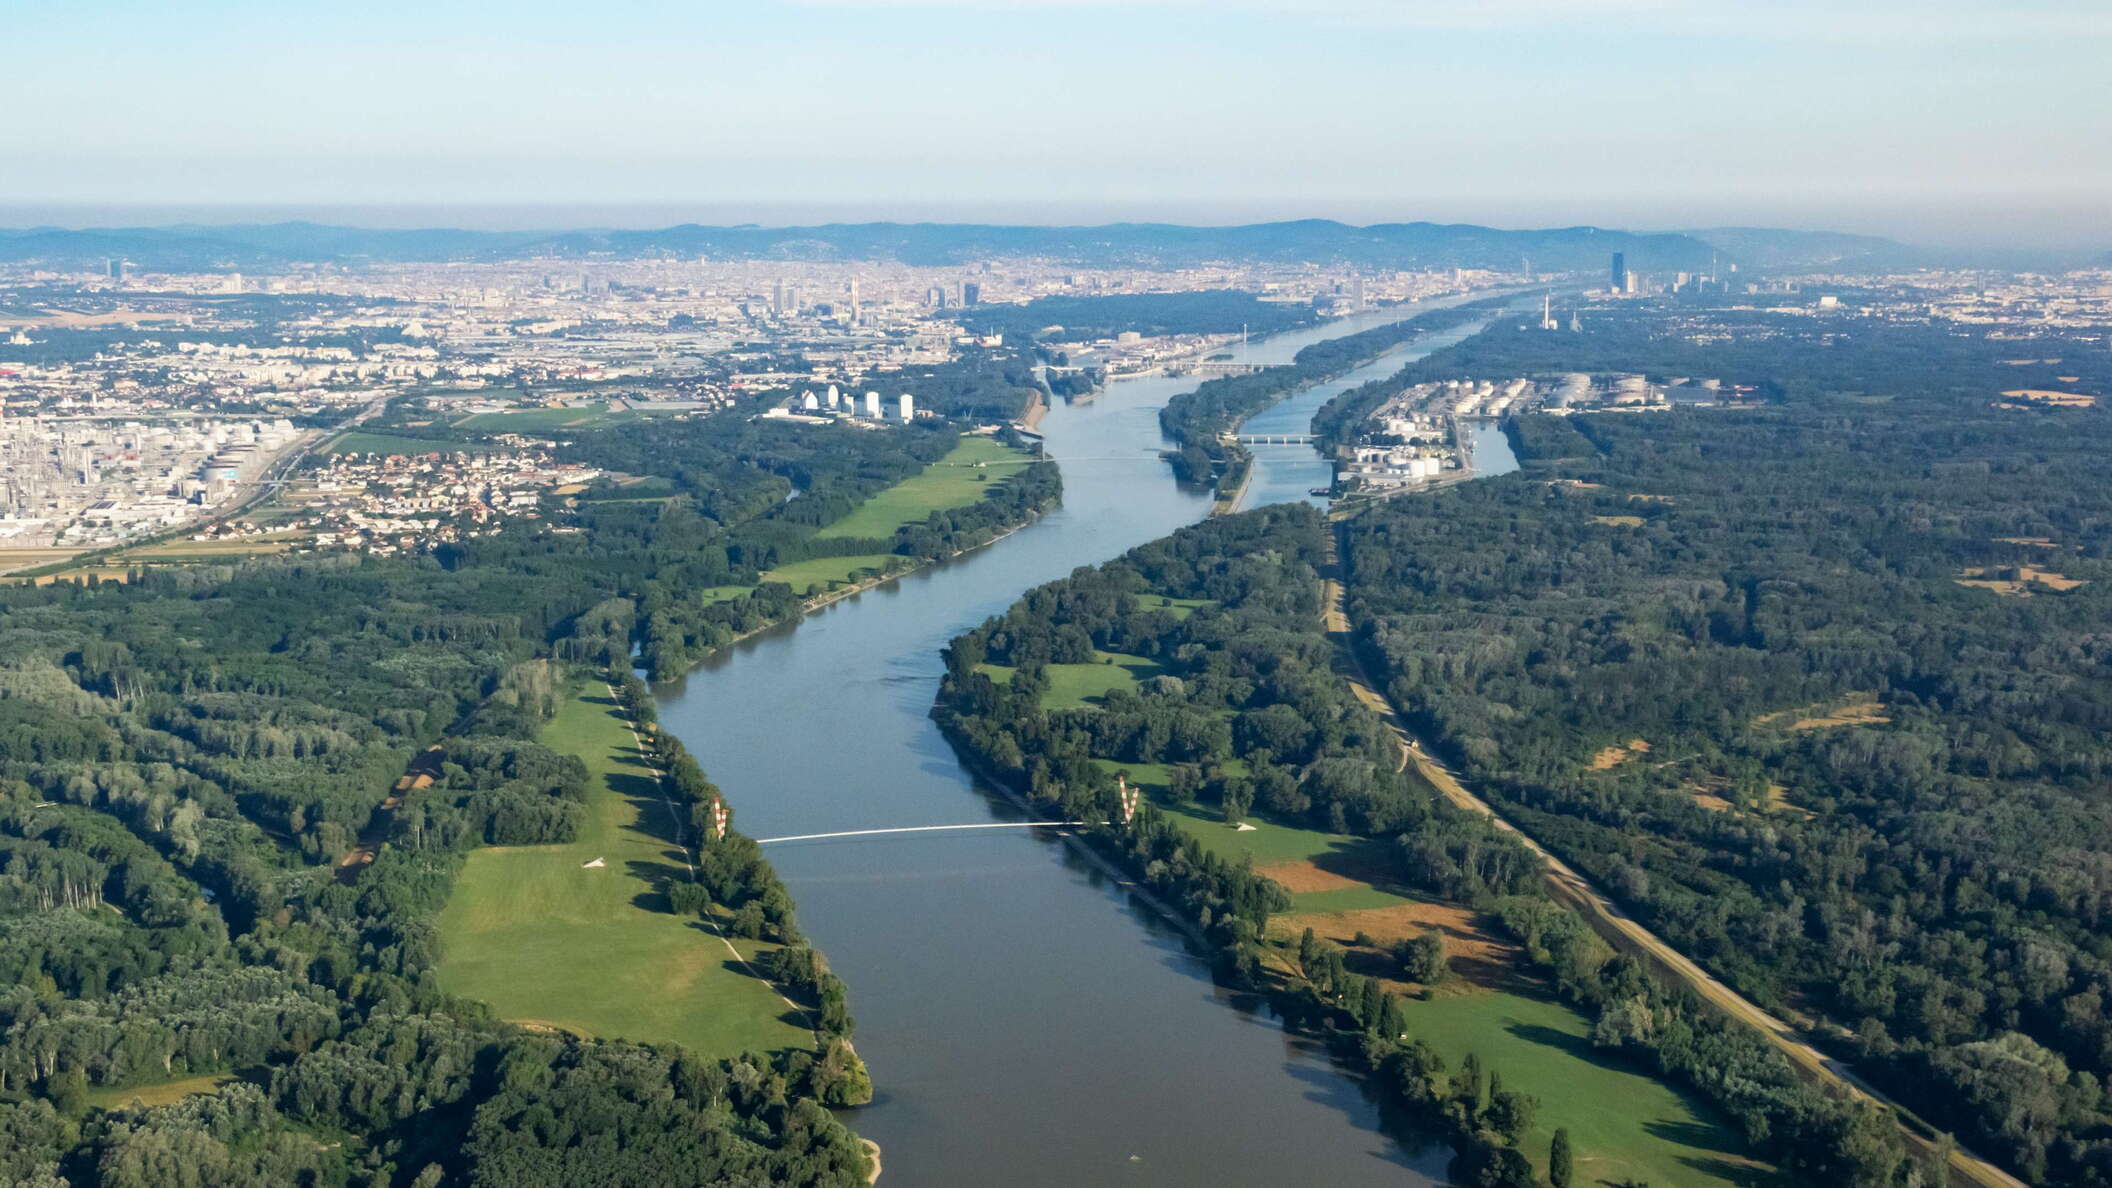 Donau with Lobau and Wien